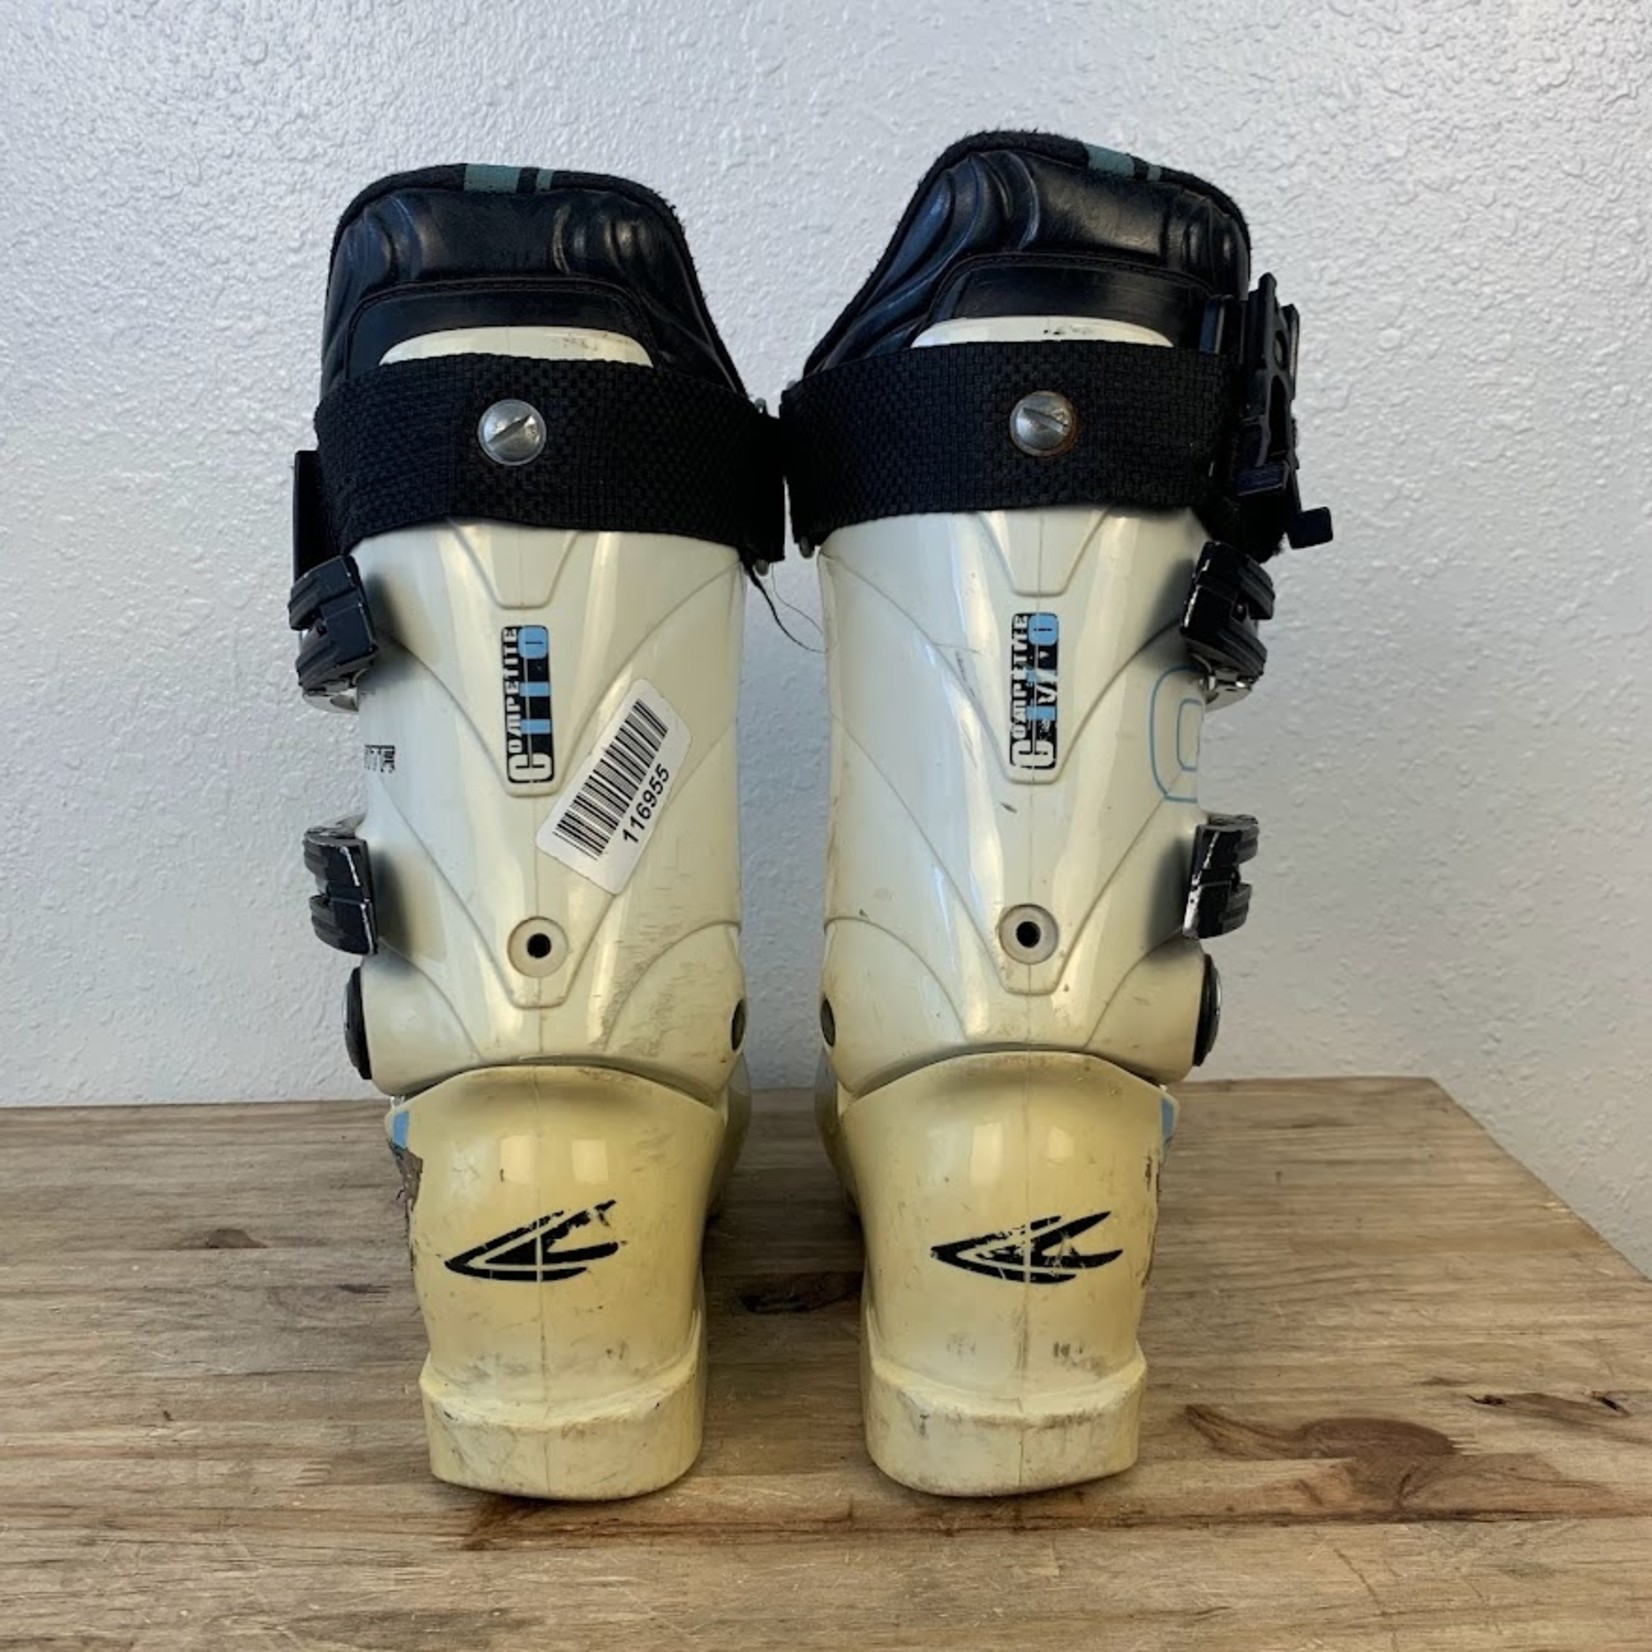 Lange Complete 110 Ski Boots Size 23